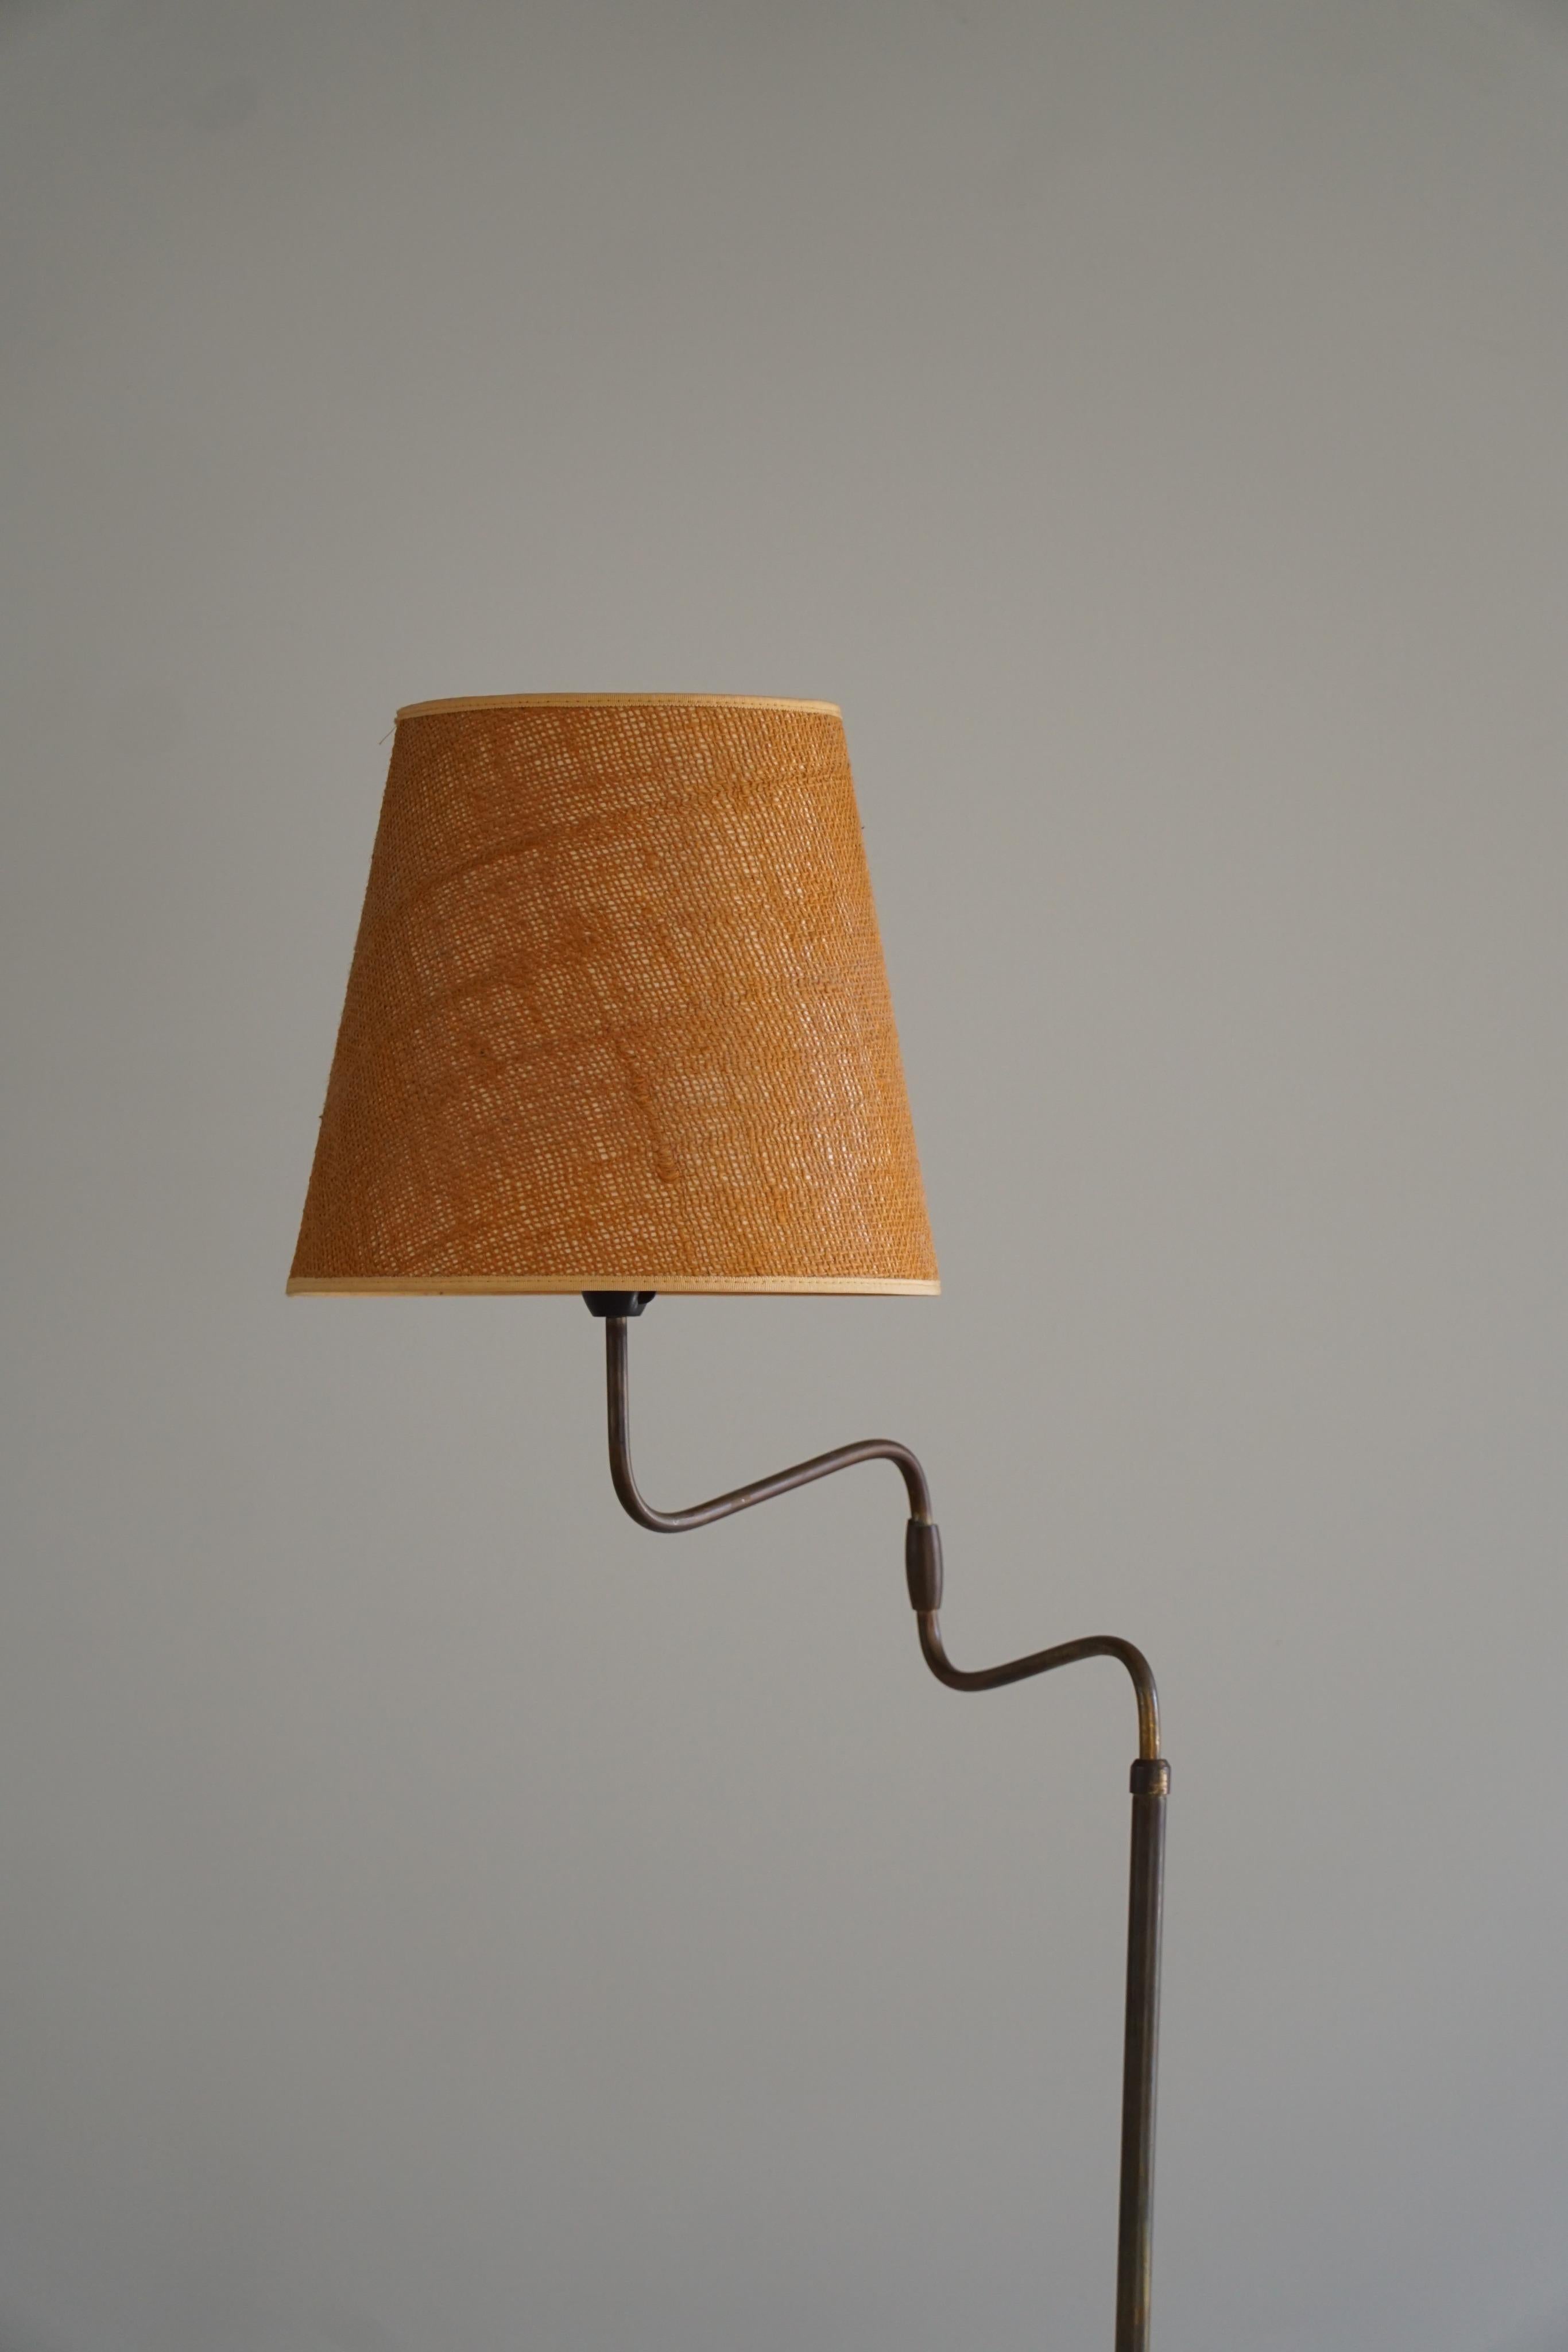 Danish Modern, Adjustable Swing Arm Floor Lamp in Brass, Midcentury, 1950s 1